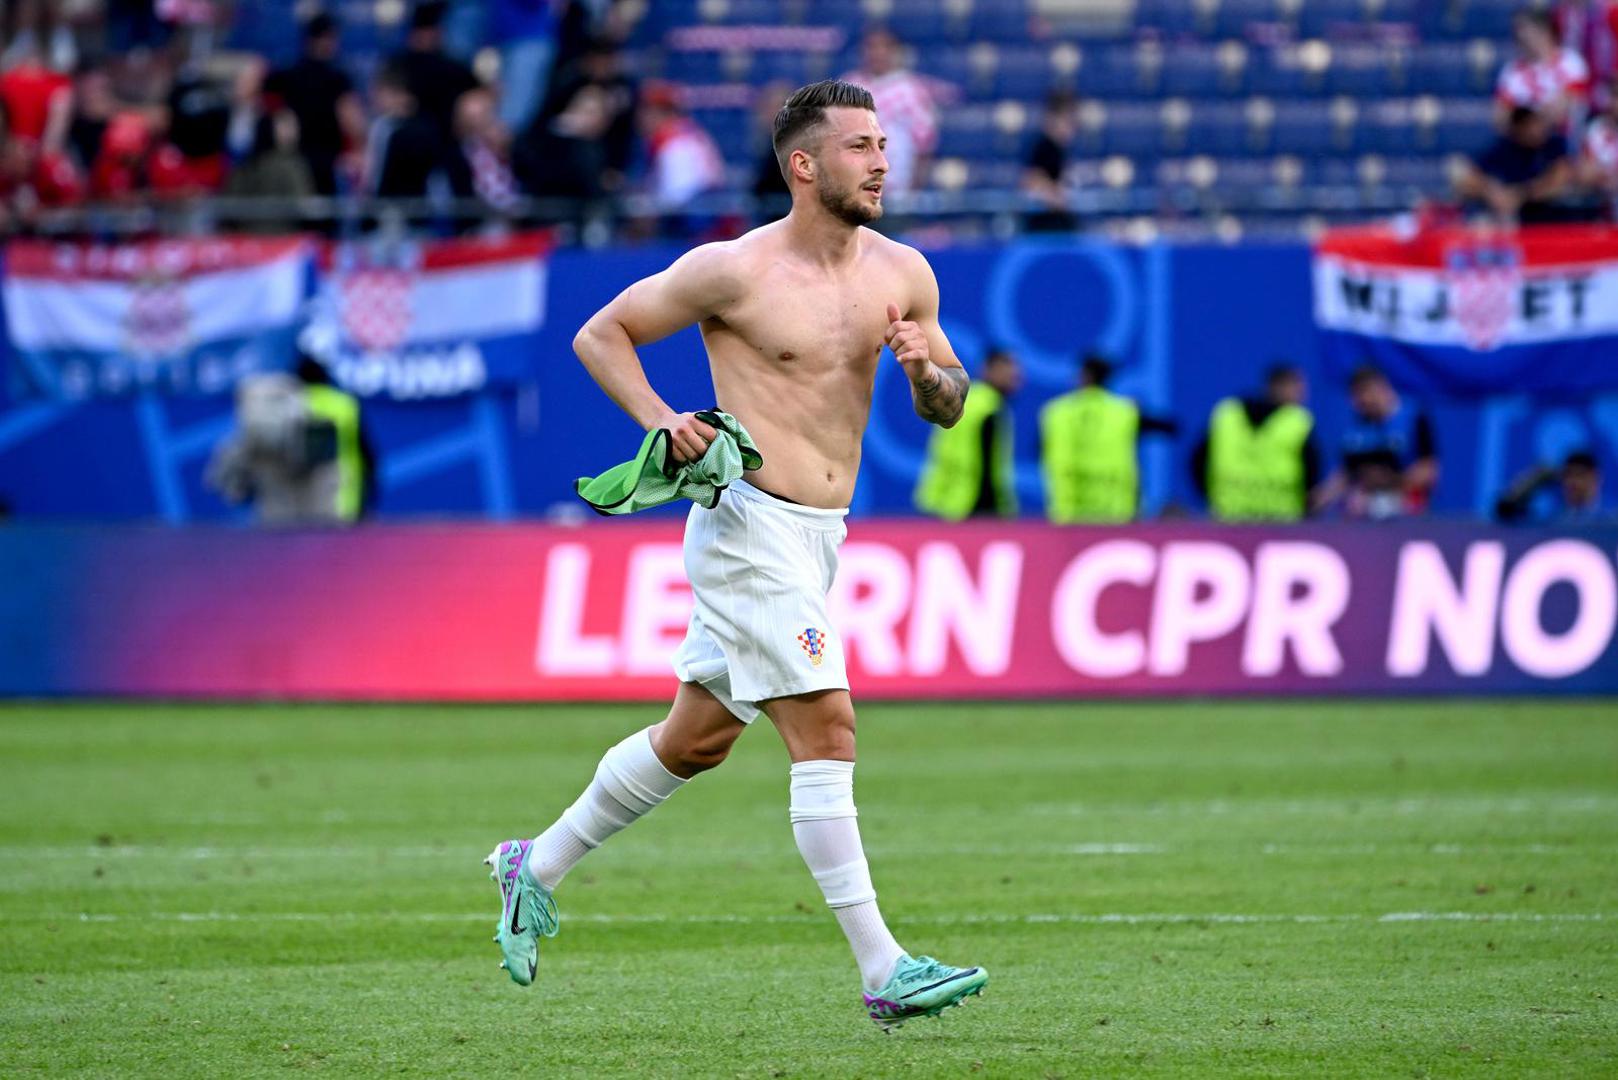 Reprezentativac Marco Pašalić nakon utakmice je odmah potrčao prema tribinama i skinuo dres.